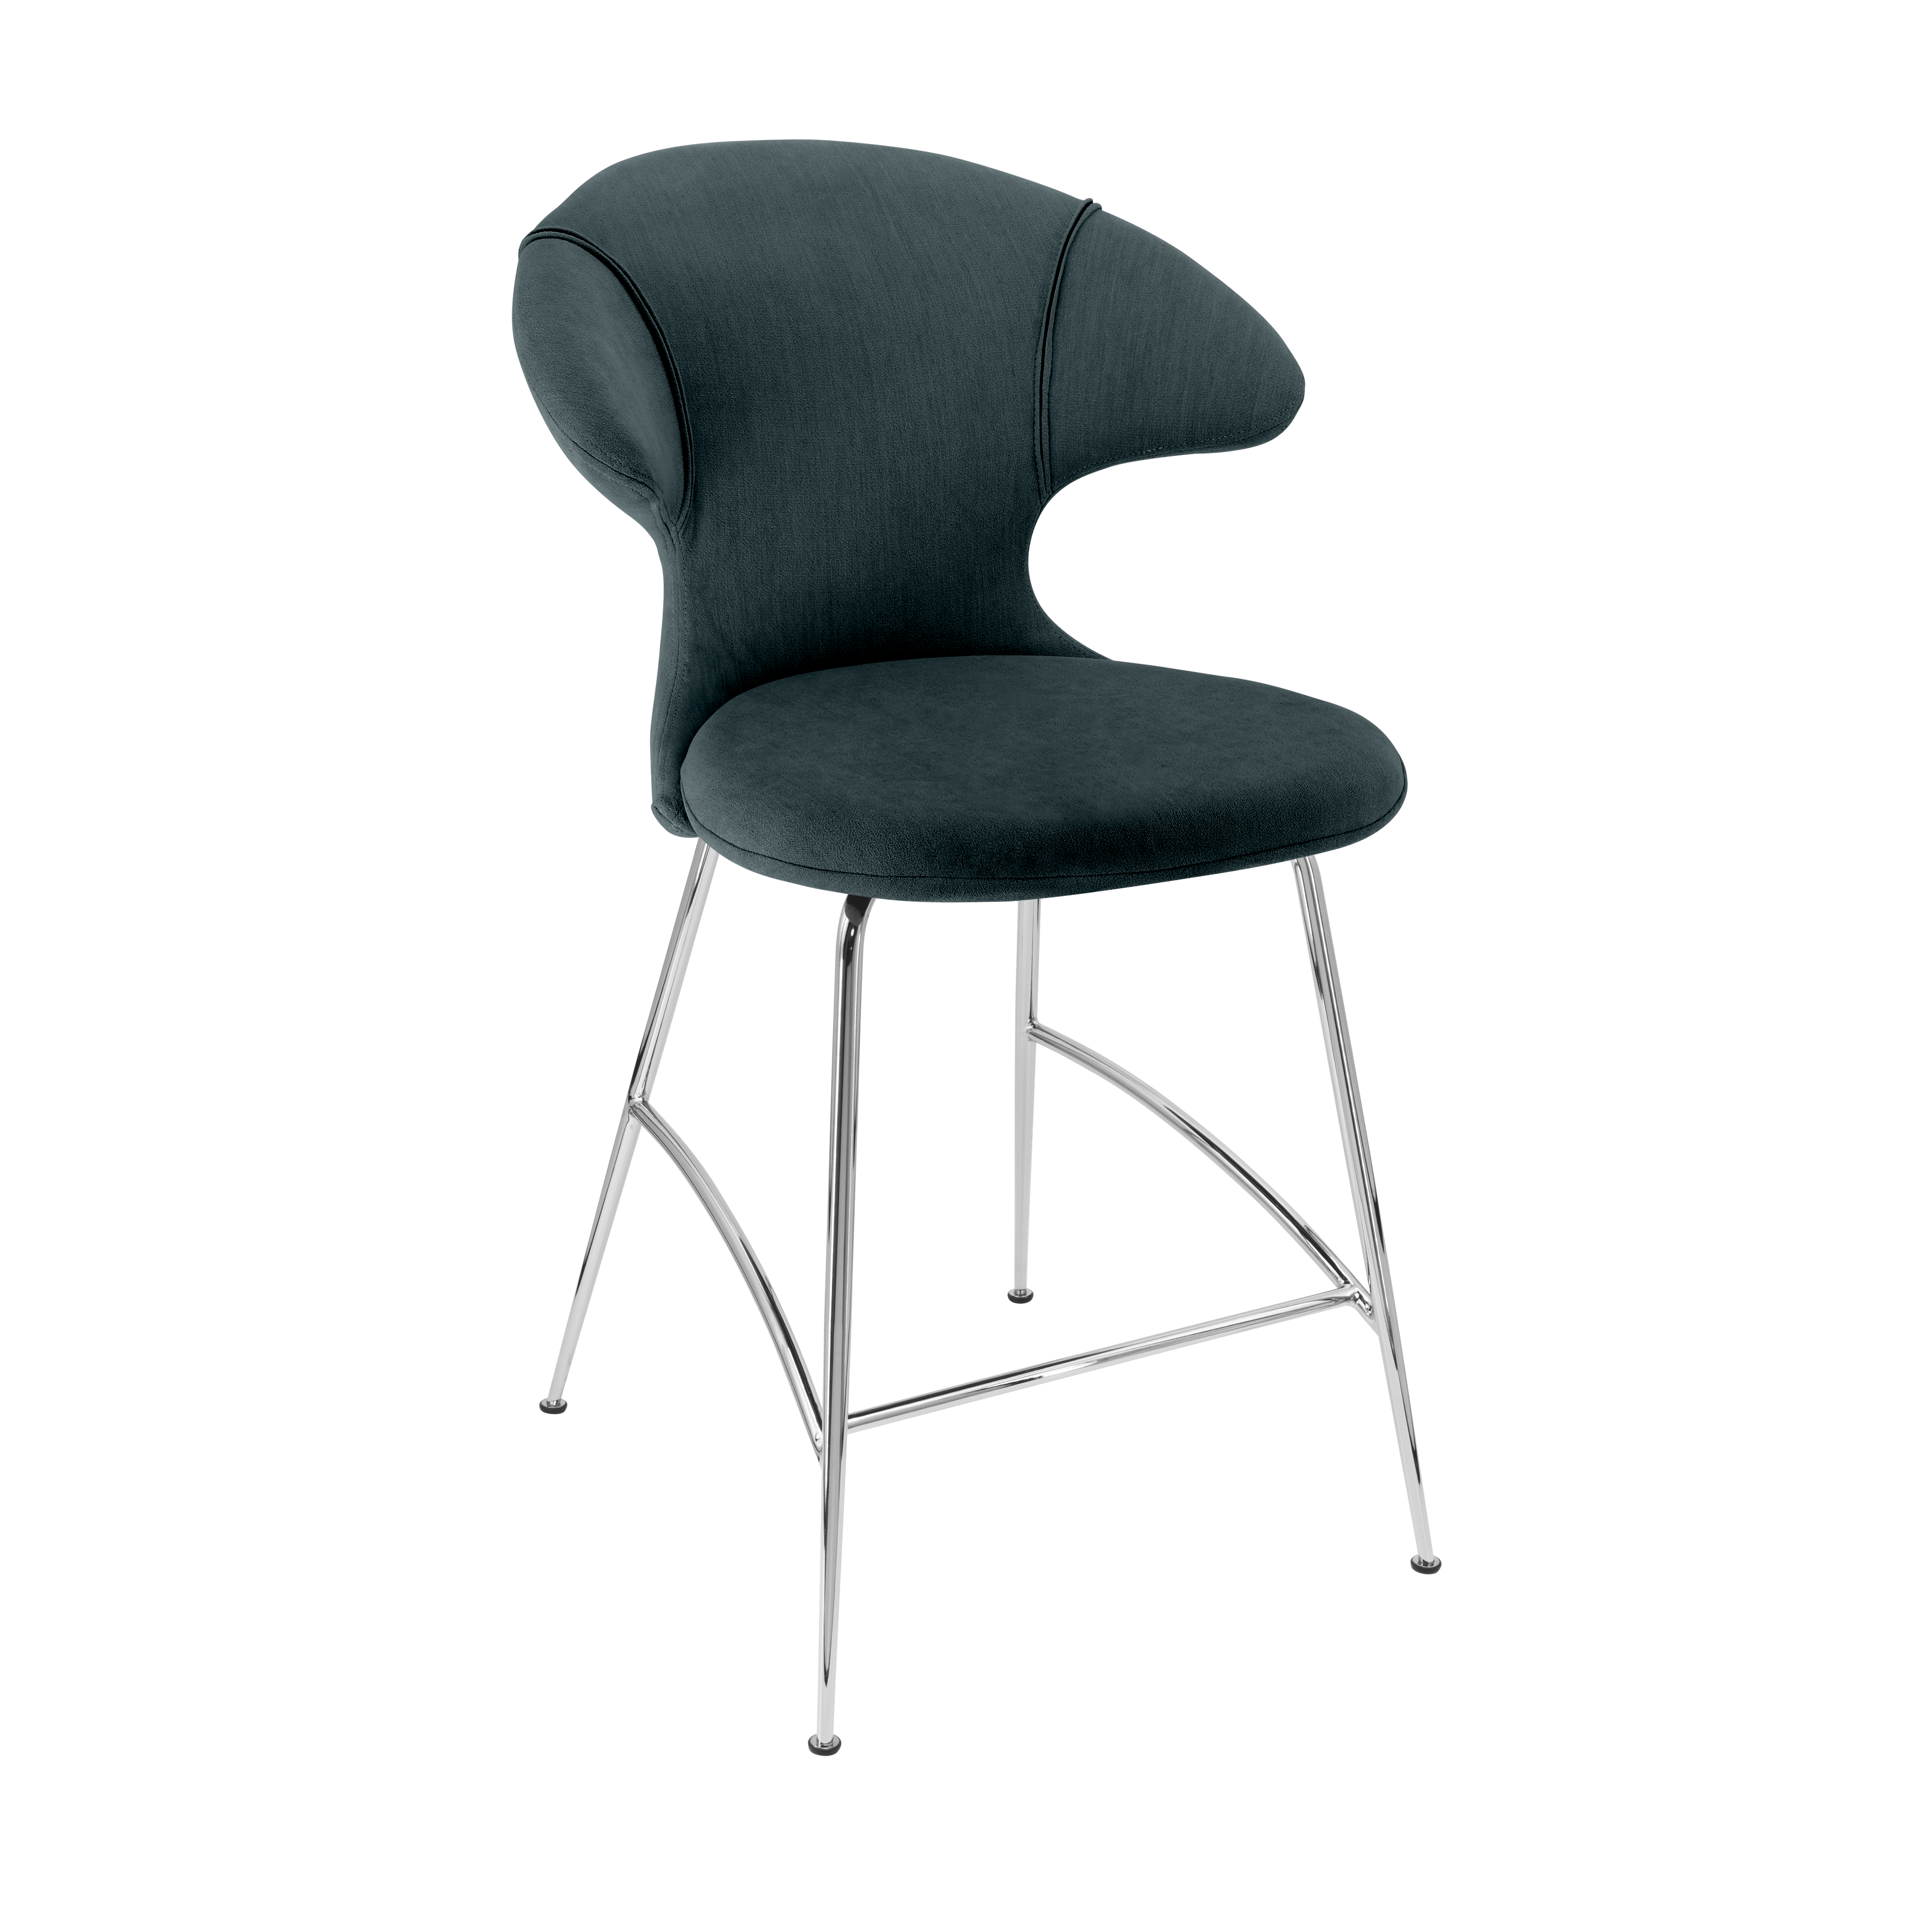 Time Flies Counter Stuhl in Quantom Blue präsentiert im Onlineshop von KAQTU Design AG. Barstuhl mit Armlehne ist von Umage